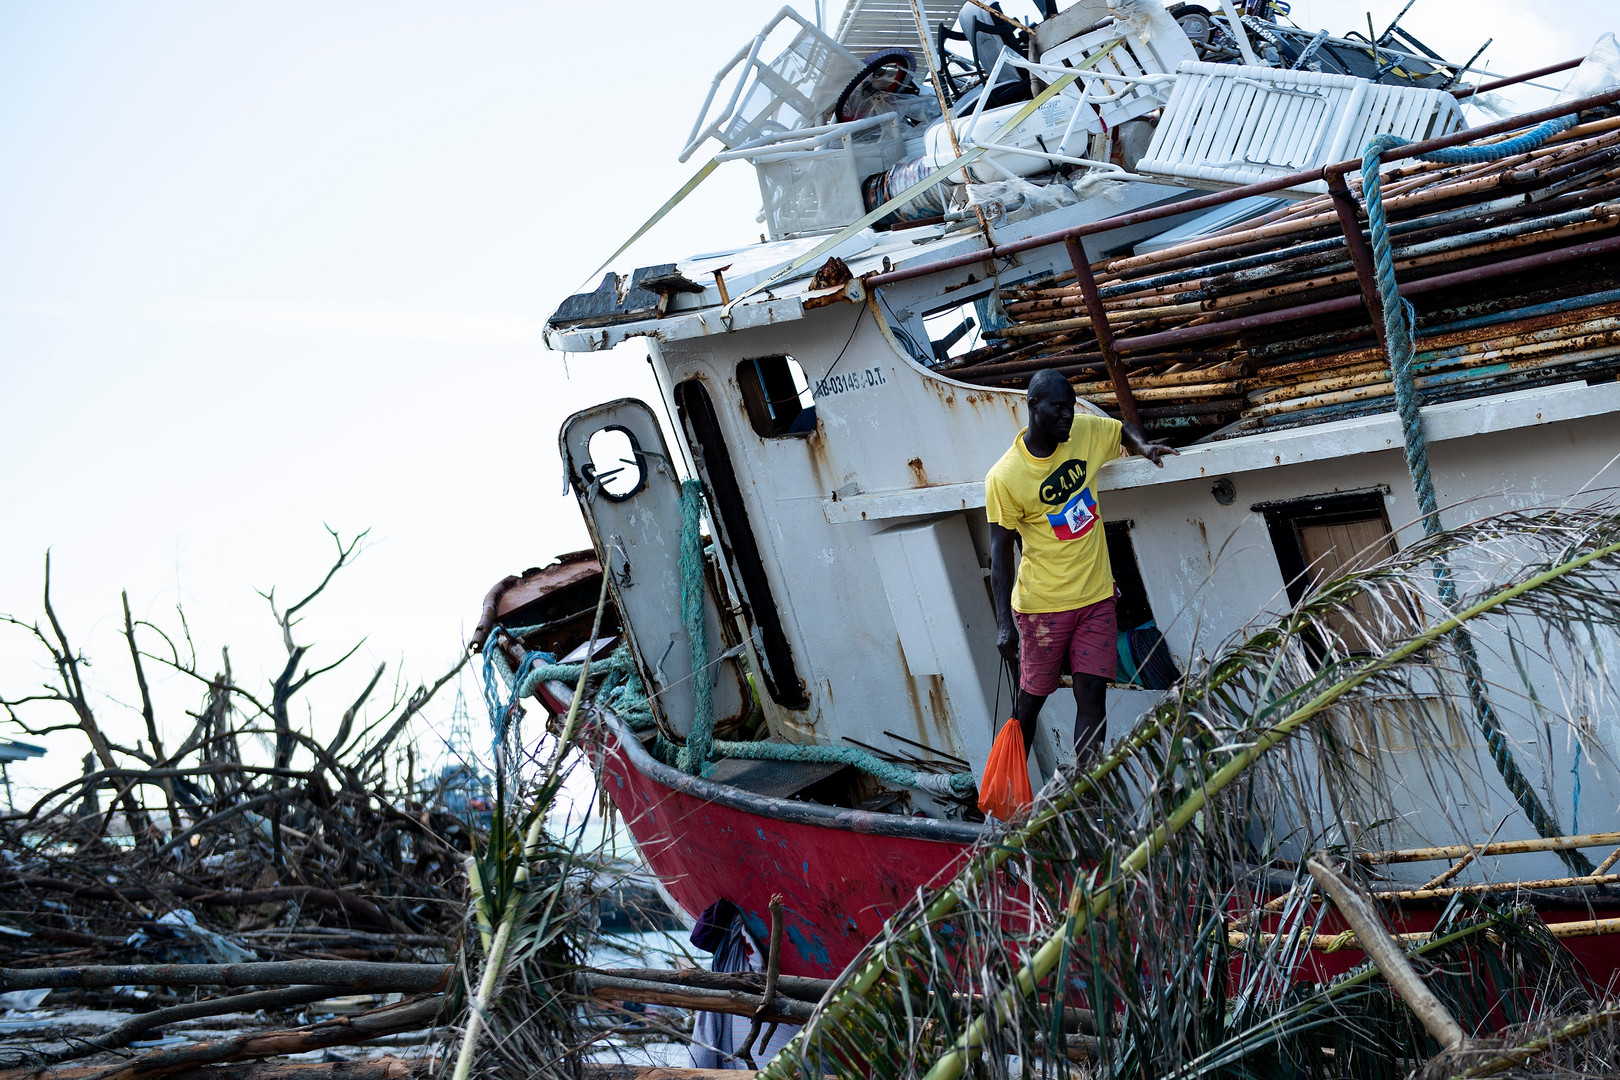 Désolation aux Bahamas après le passage de l'ouragan Dorian qui a fait au moins 40 morts (IMAGES)